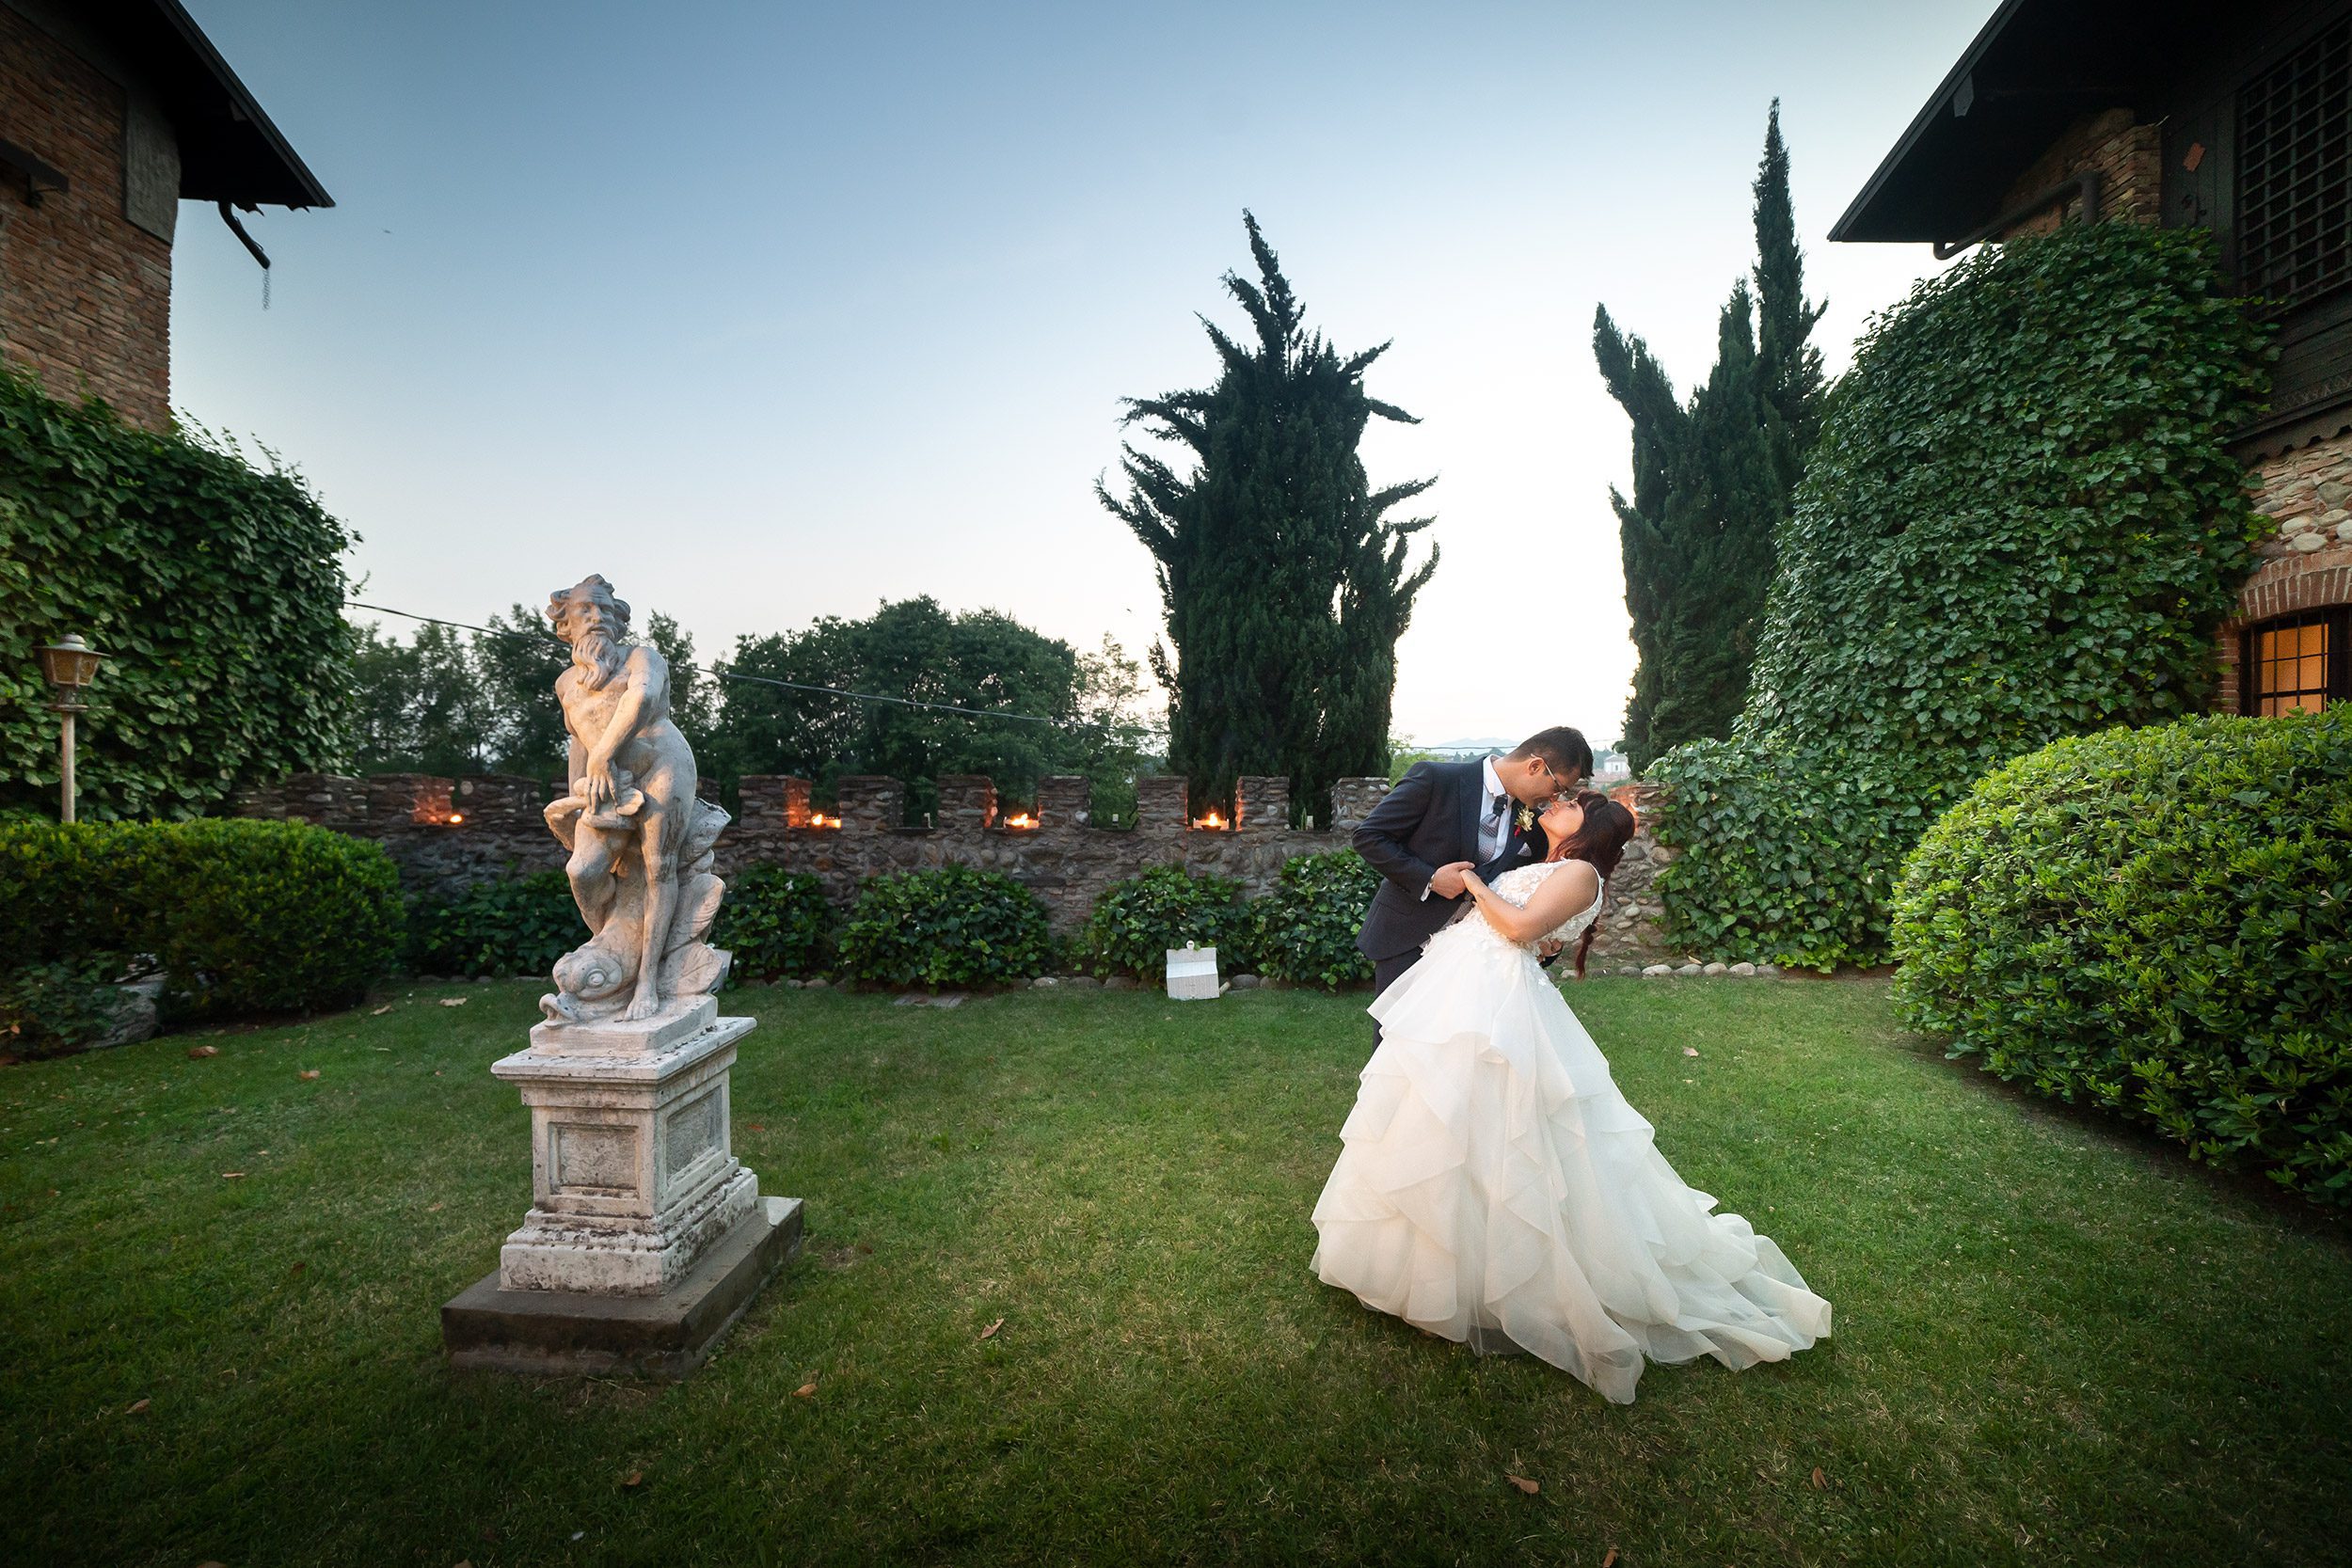 0000 reportage foto matrimonio wedding ritratto sposi casquet castello marigolda curno bergamo 1